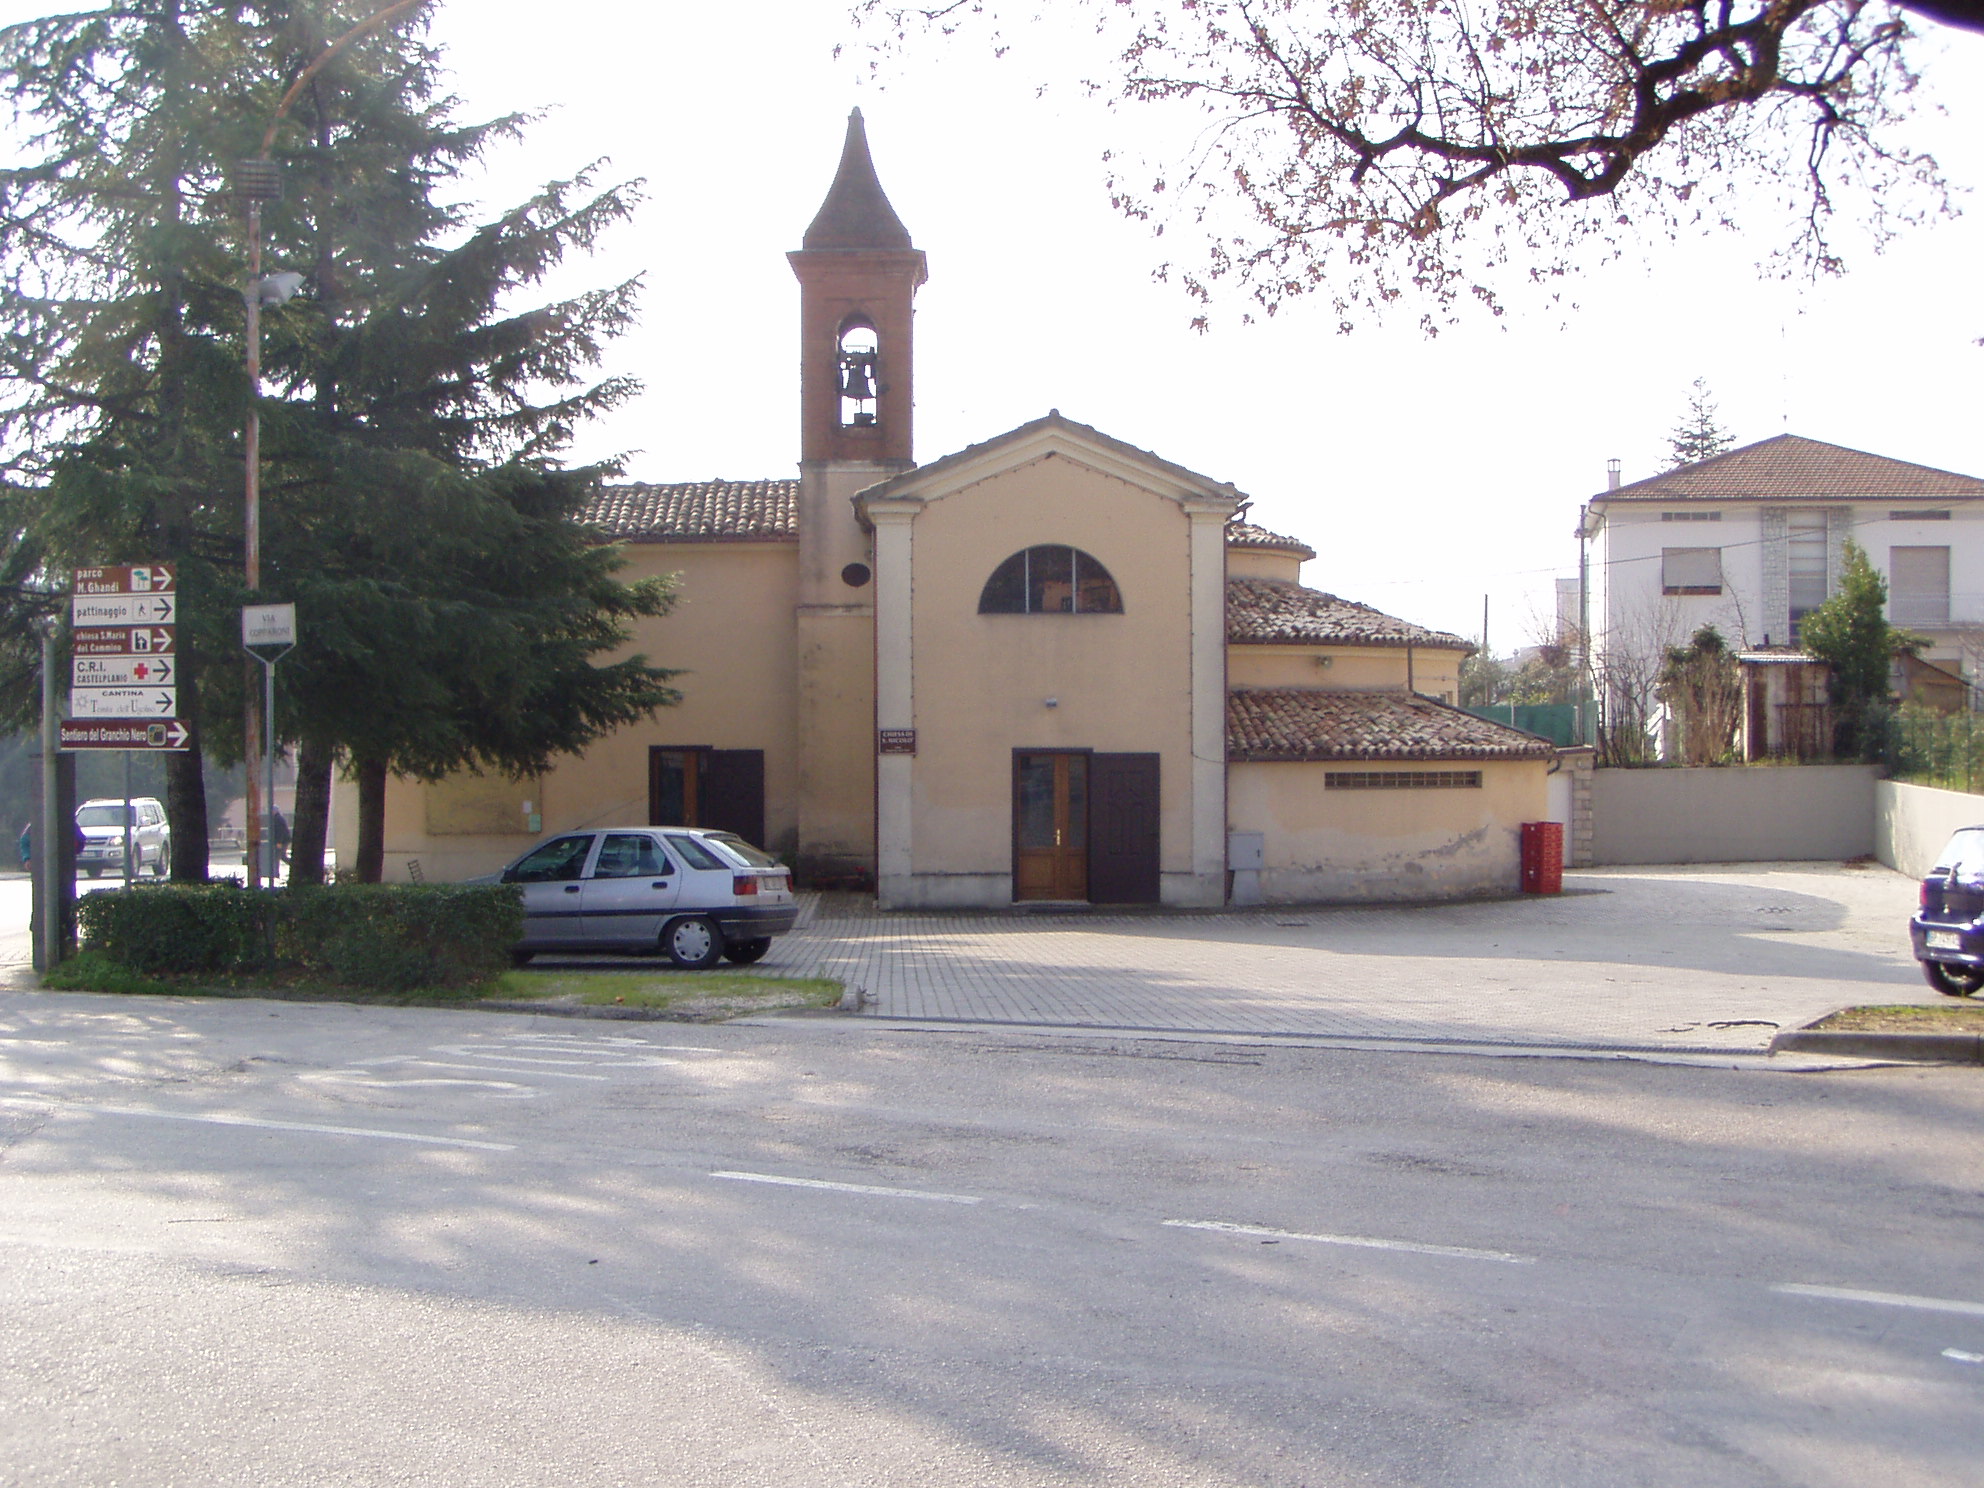 Chiesa di S. Nicolò (chiesa, parrocchiale) - Castelplanio (AN) 